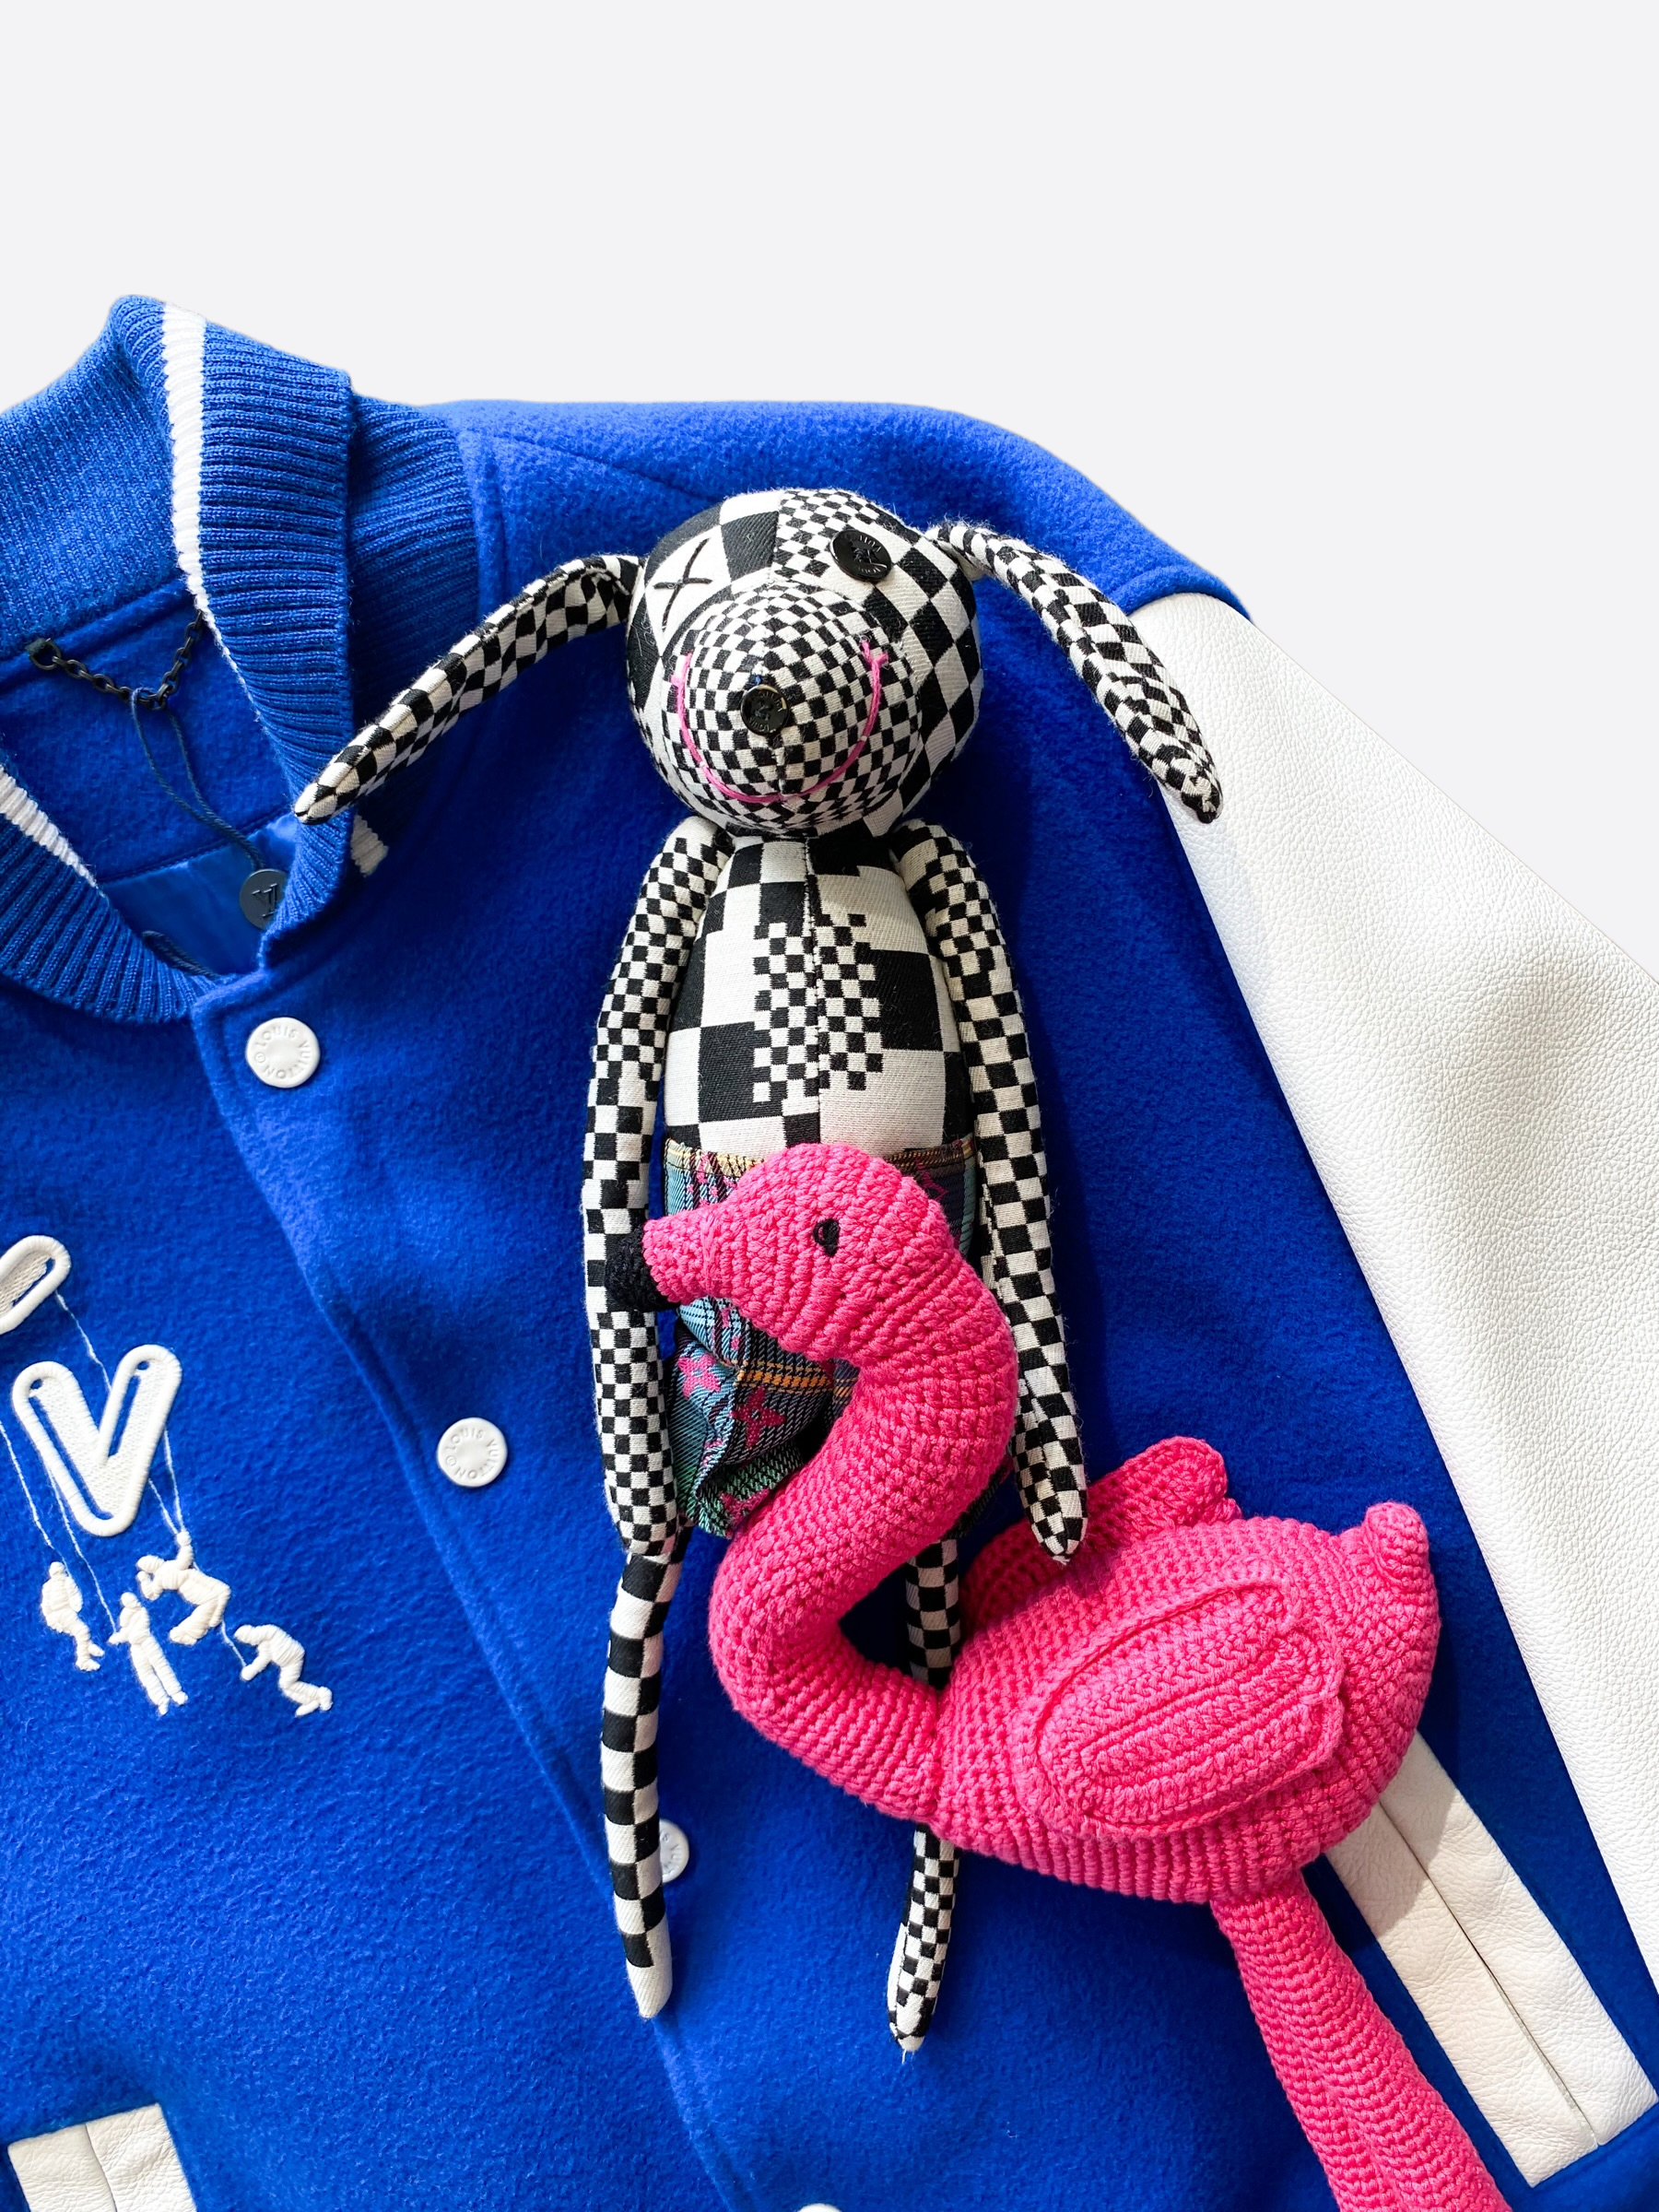 Louis Vuitton Puppet Baseball Jacket